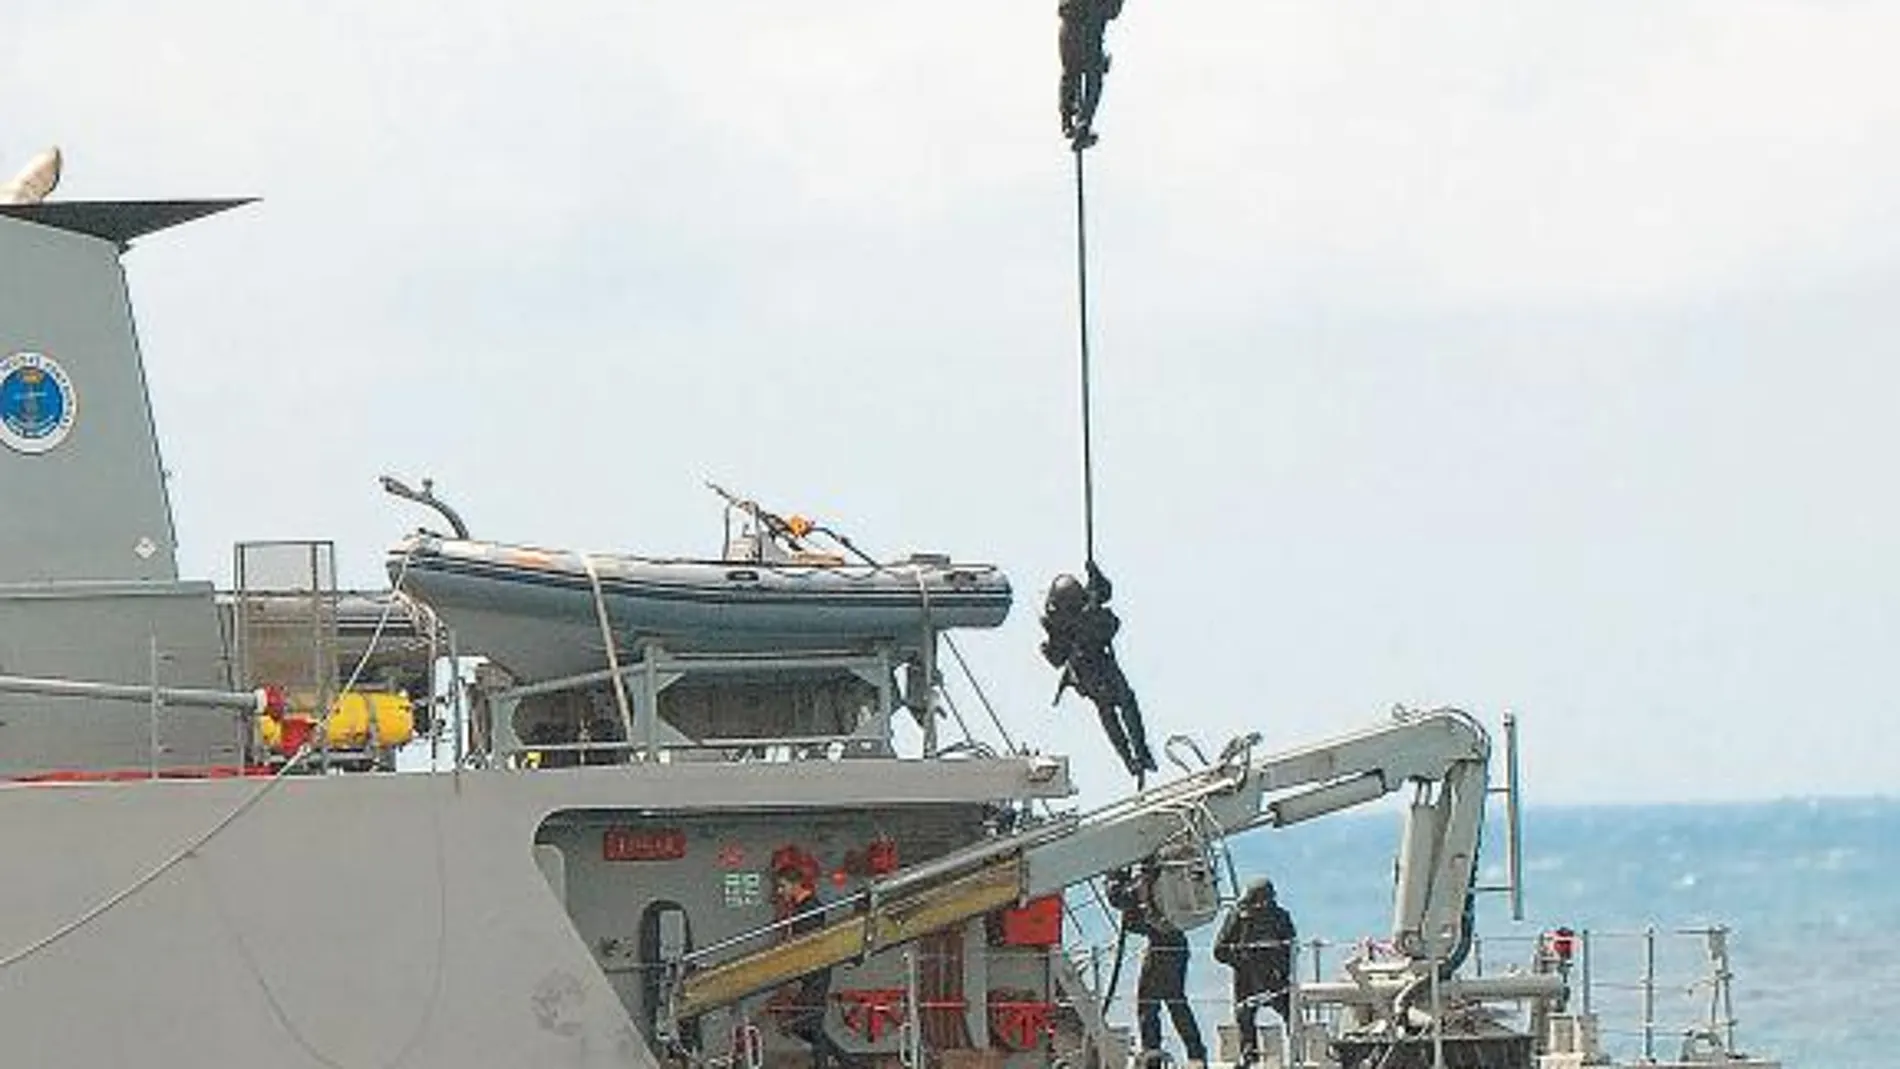 Ejercicio de infiltración en un buque desde un helicóptero con la técnica conocida como Fast-Rope